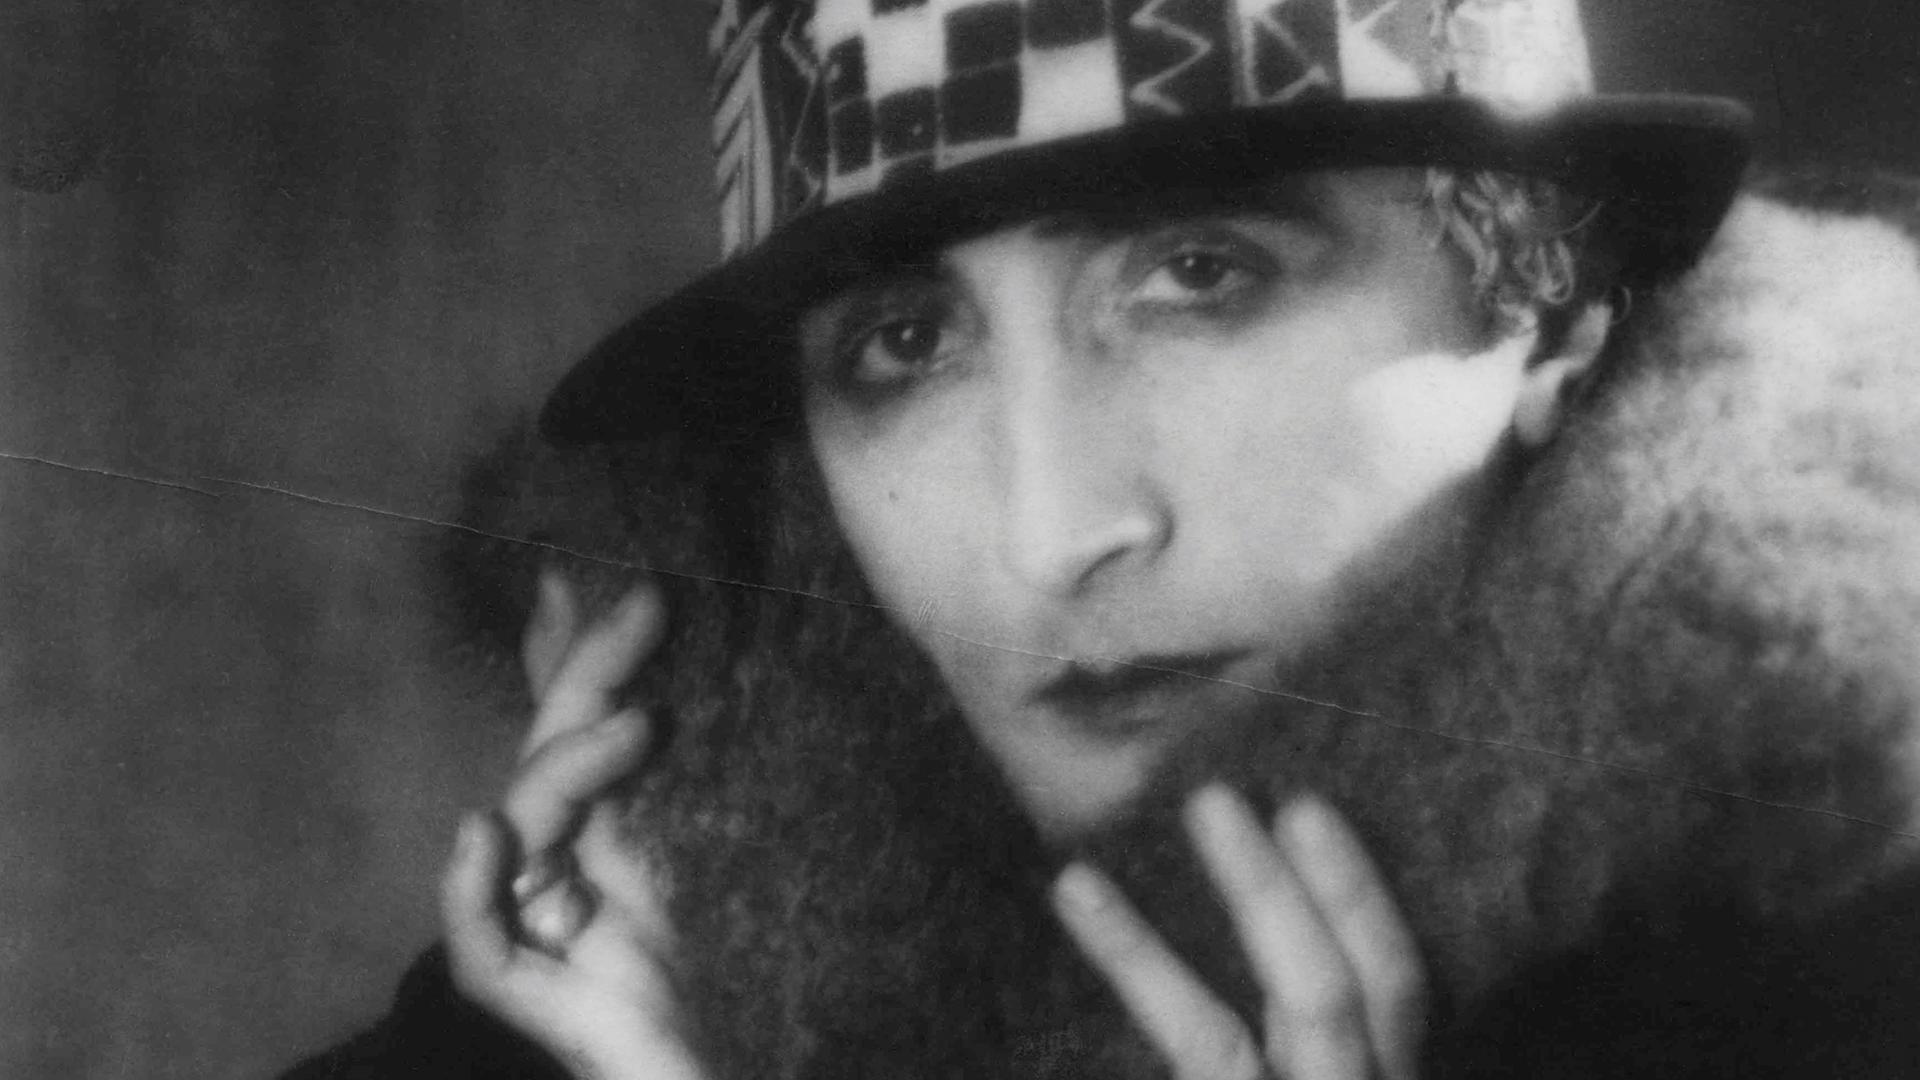 Marcel Duchamp als "Rrose Sélavy", aufgenommen von Man Ray, 1920/21.